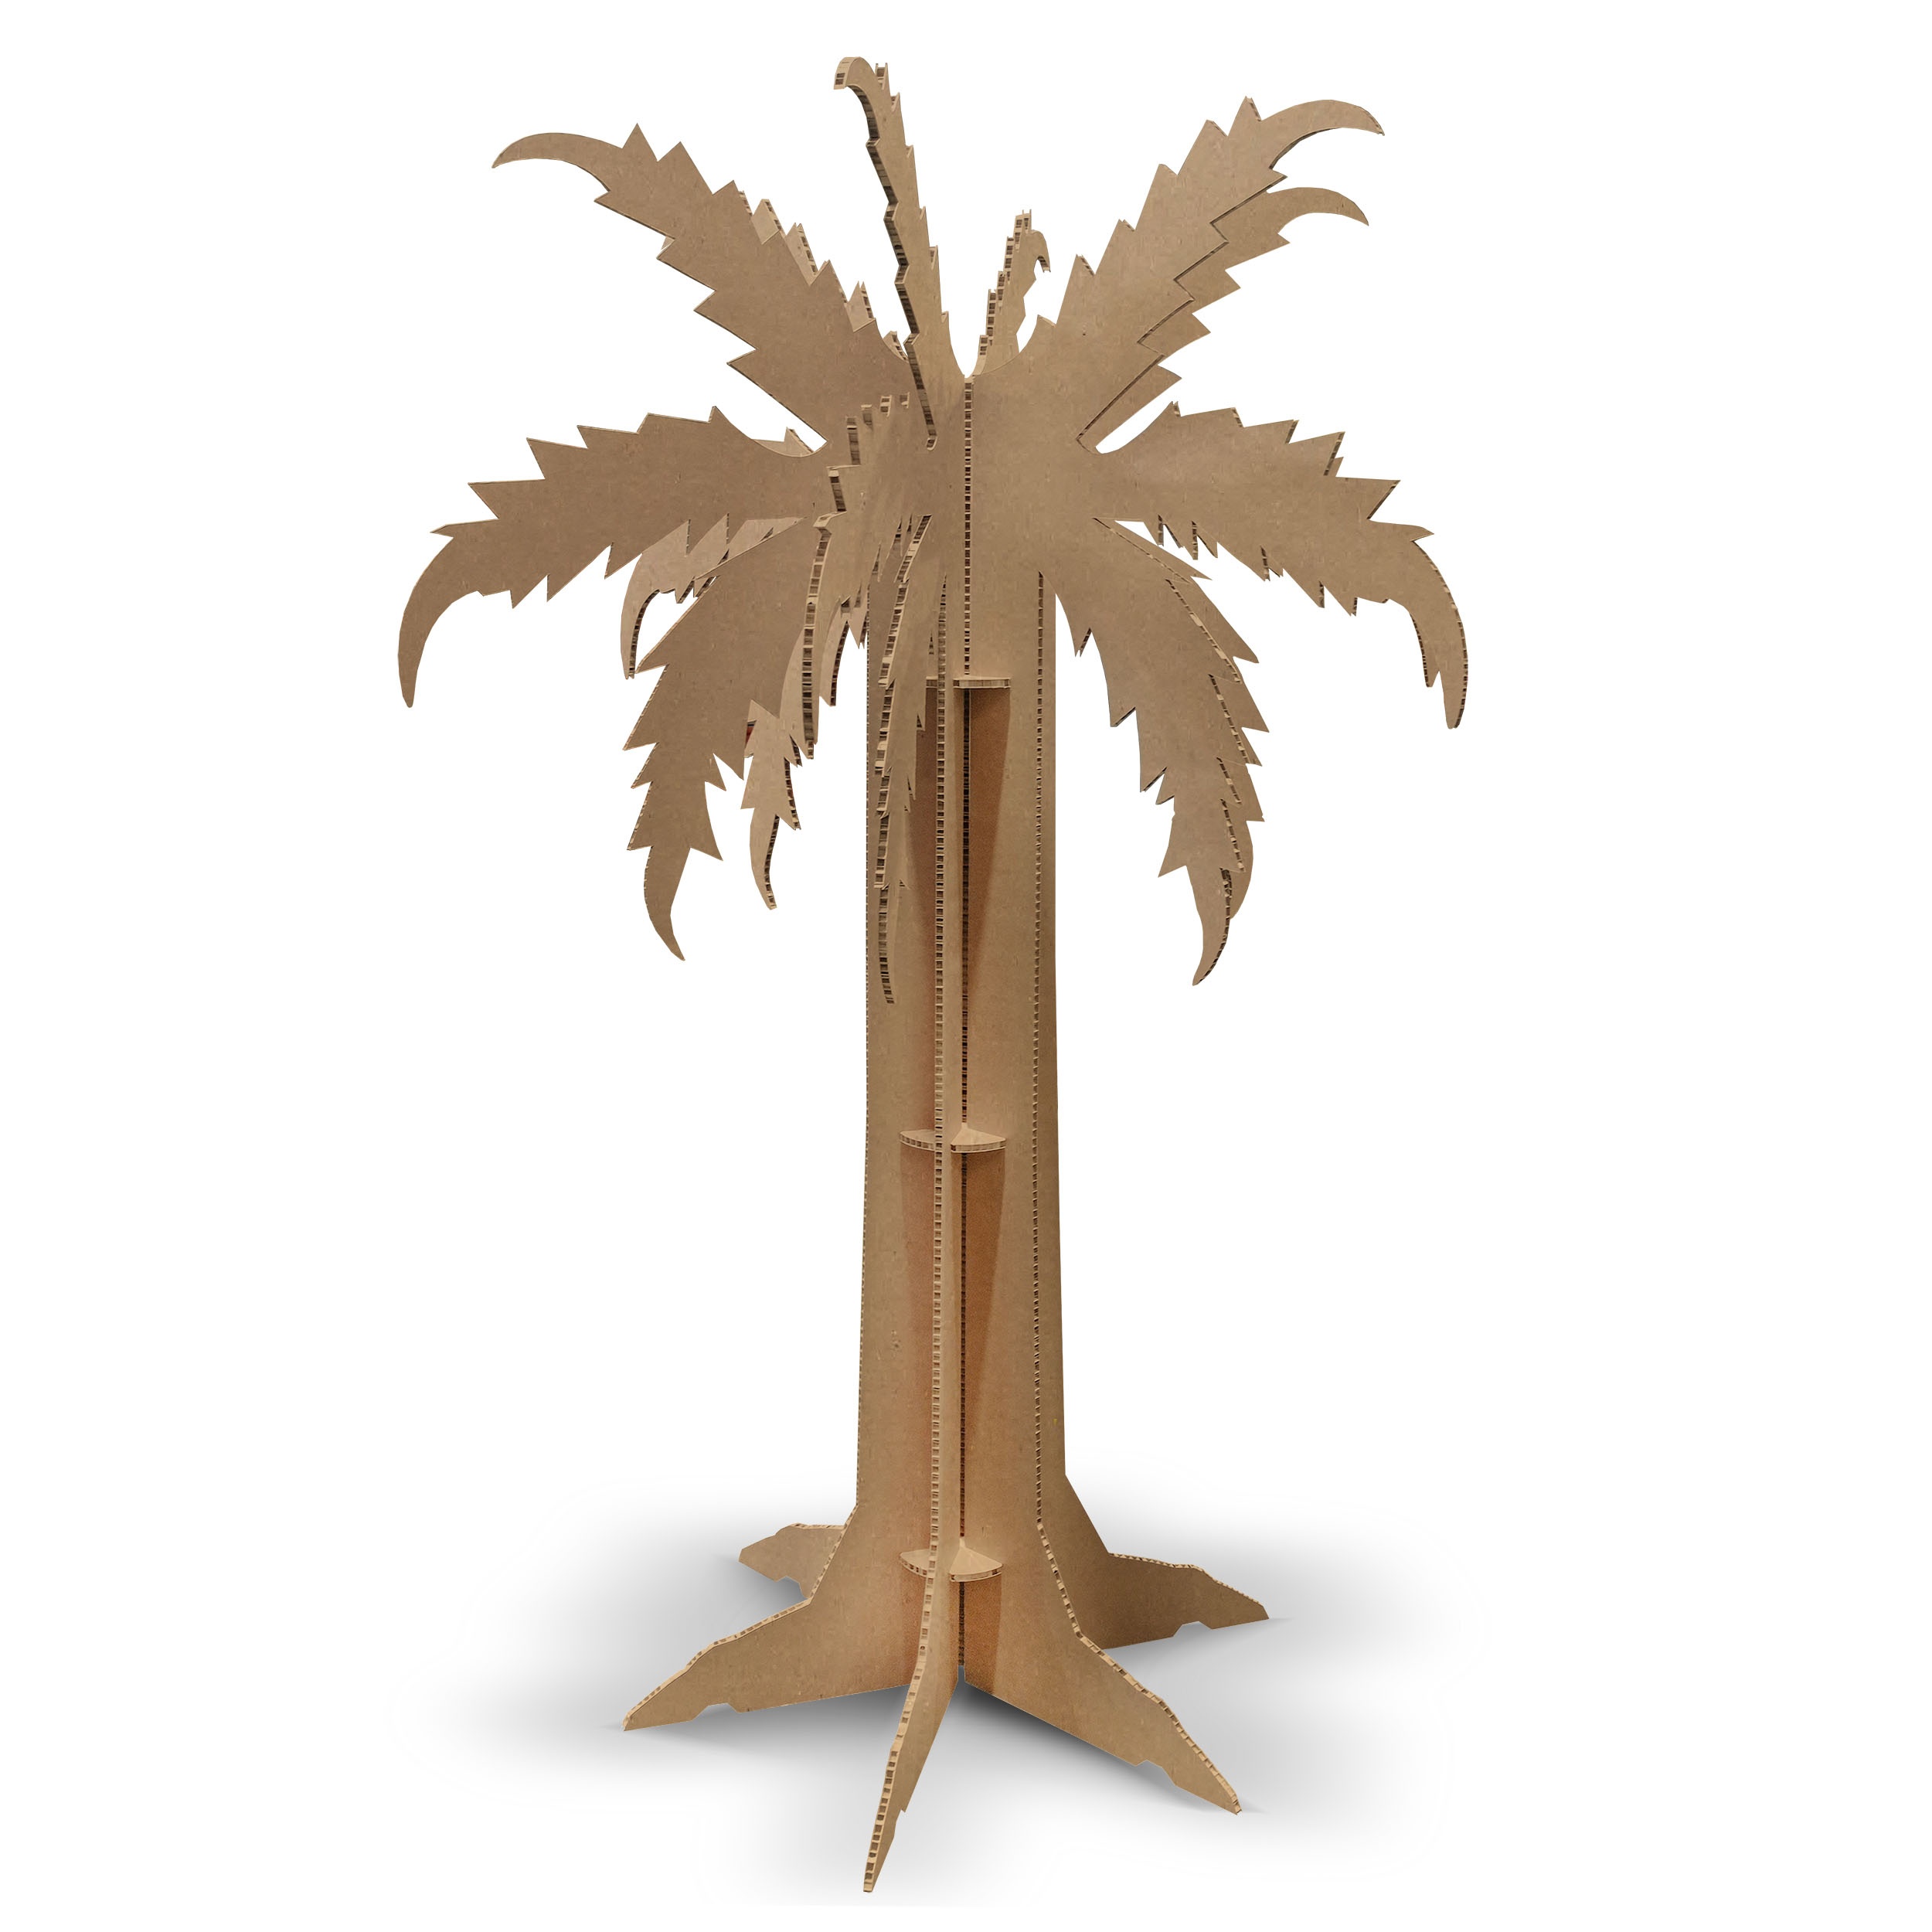 Palmier en carton sur 6 axes utilisé aussi comme arbre à mot.